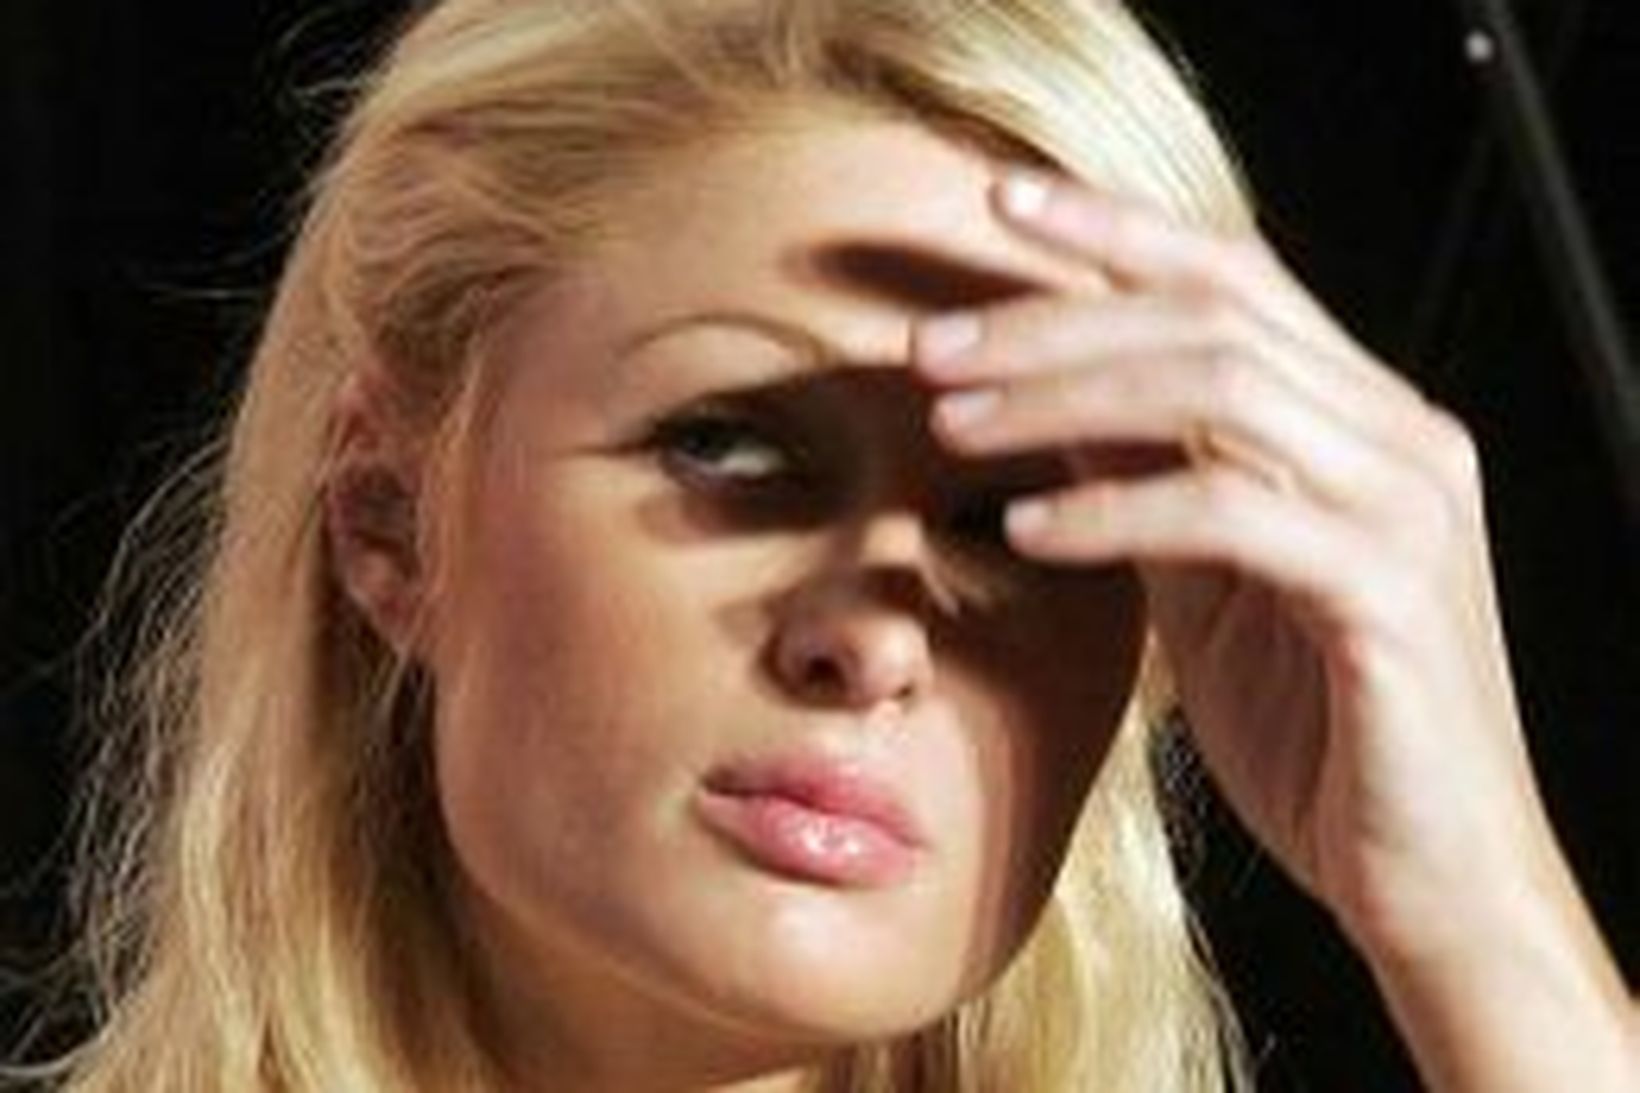 Paris Hilton getur nú óhrædd gert skandala án þess að …